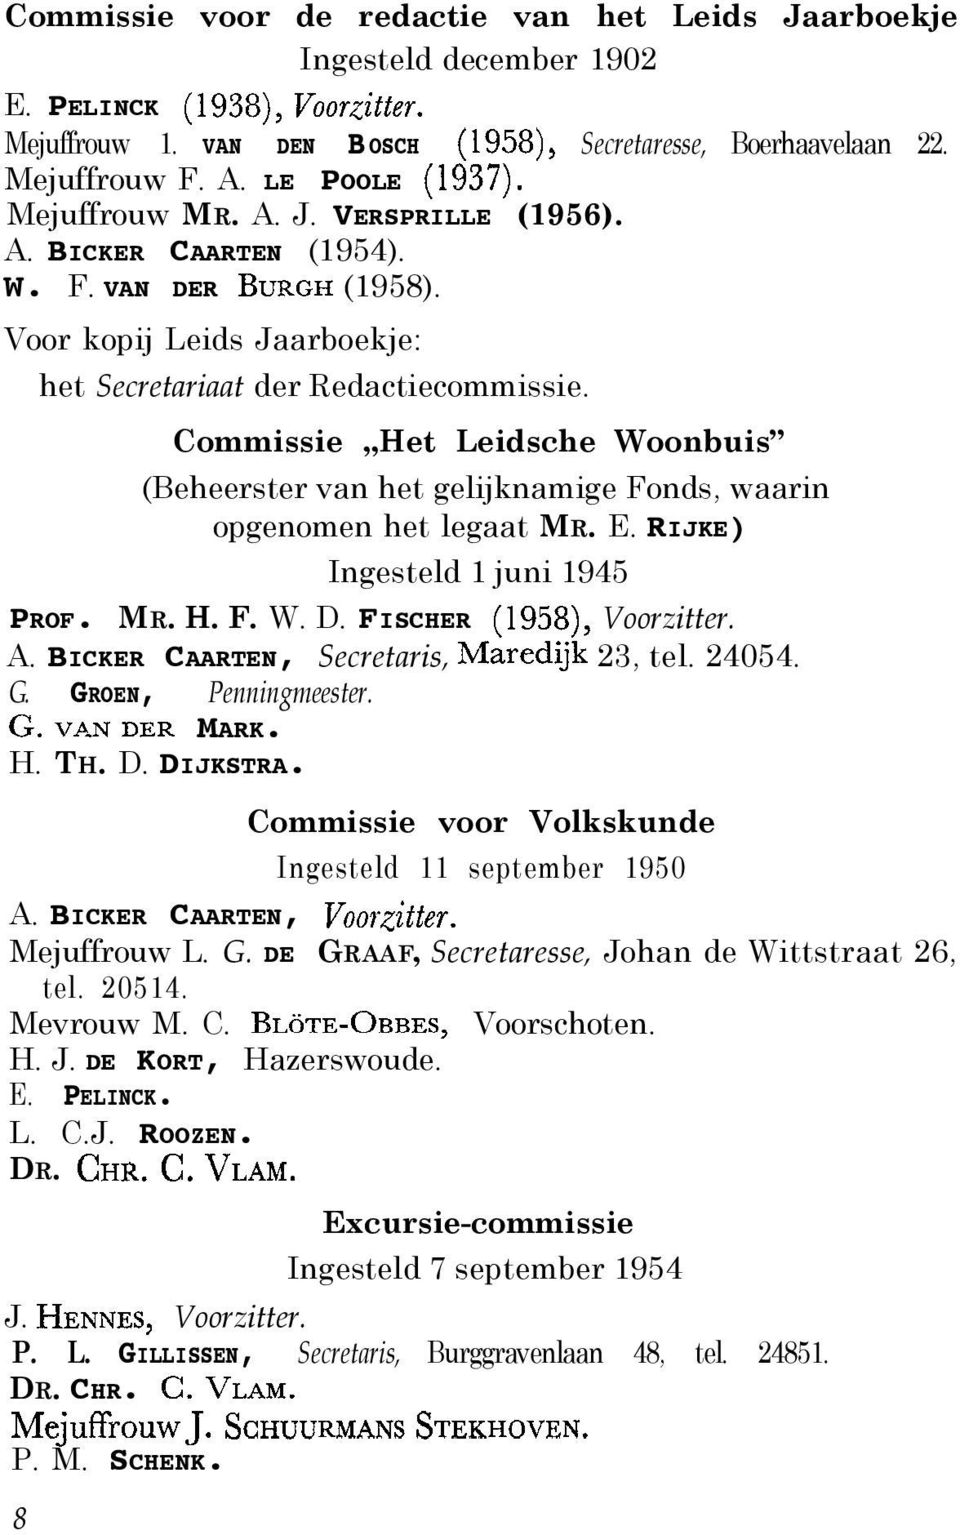 Commissie,,Het Leidsche Woonbuis (Beheerster van het gelijknamige Fonds, waarin opgenomen het legaat MR. E. RIJKE) Ingesteld 1 juni 1945 PROF. MR. H. F. W. D. FISCHER (1958), Voorzitter. A.